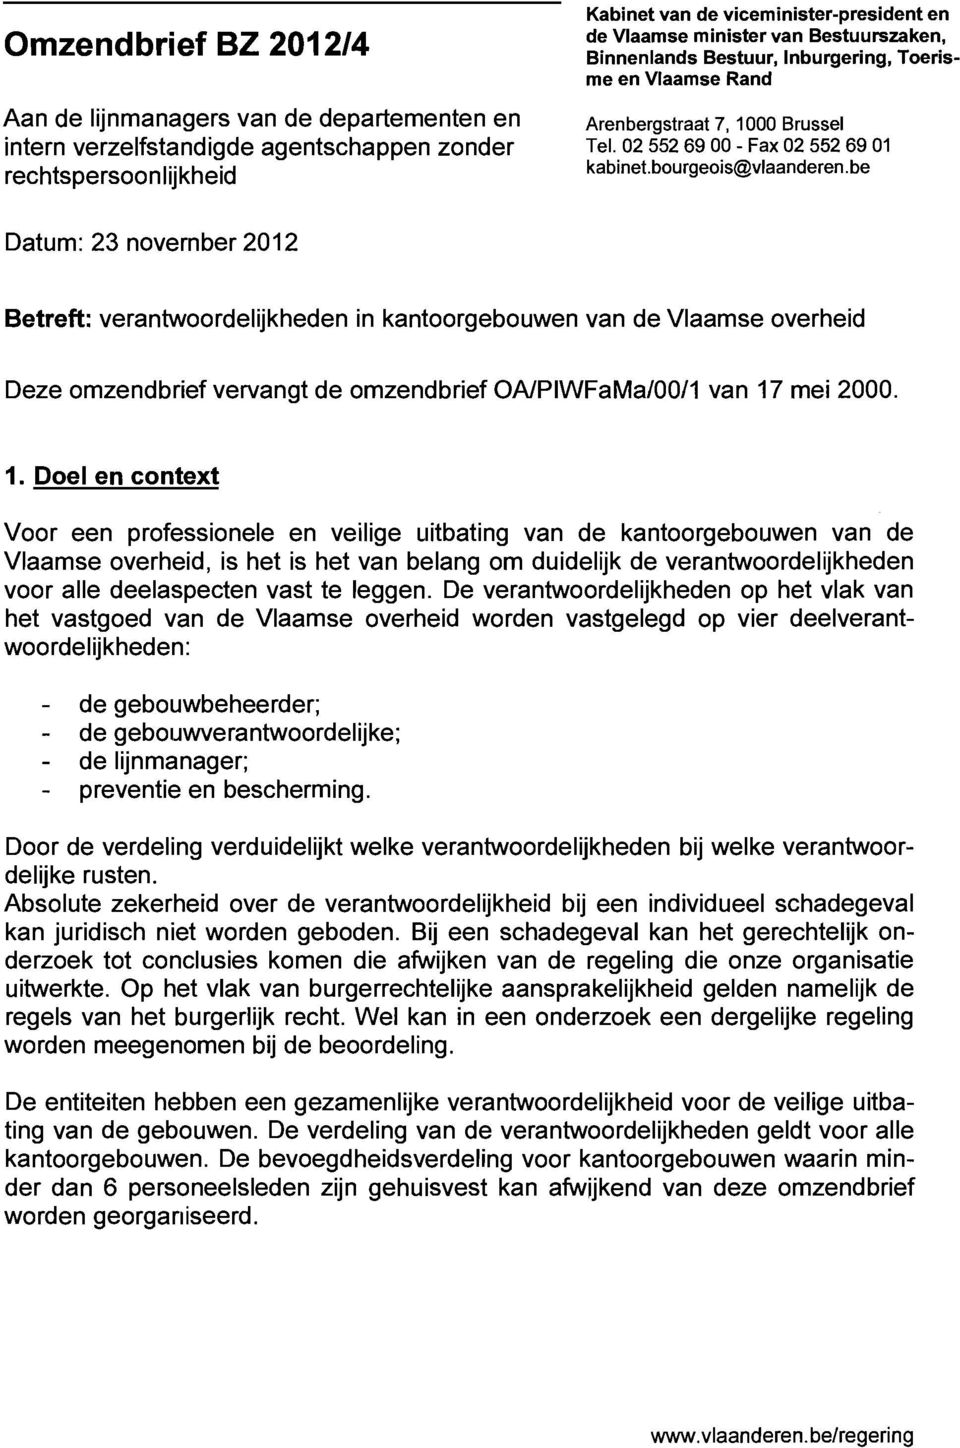 be rechtspersoonlijkheid Datum: 23 novernber 201 2 Betreft: verantwoordelijkheden in kantoorgebouwen van de Vlaamse overheid Deze omzendbrief vervangt de omzendbrief OA/PIWFaMa/OO/I van 17 mei 2000.